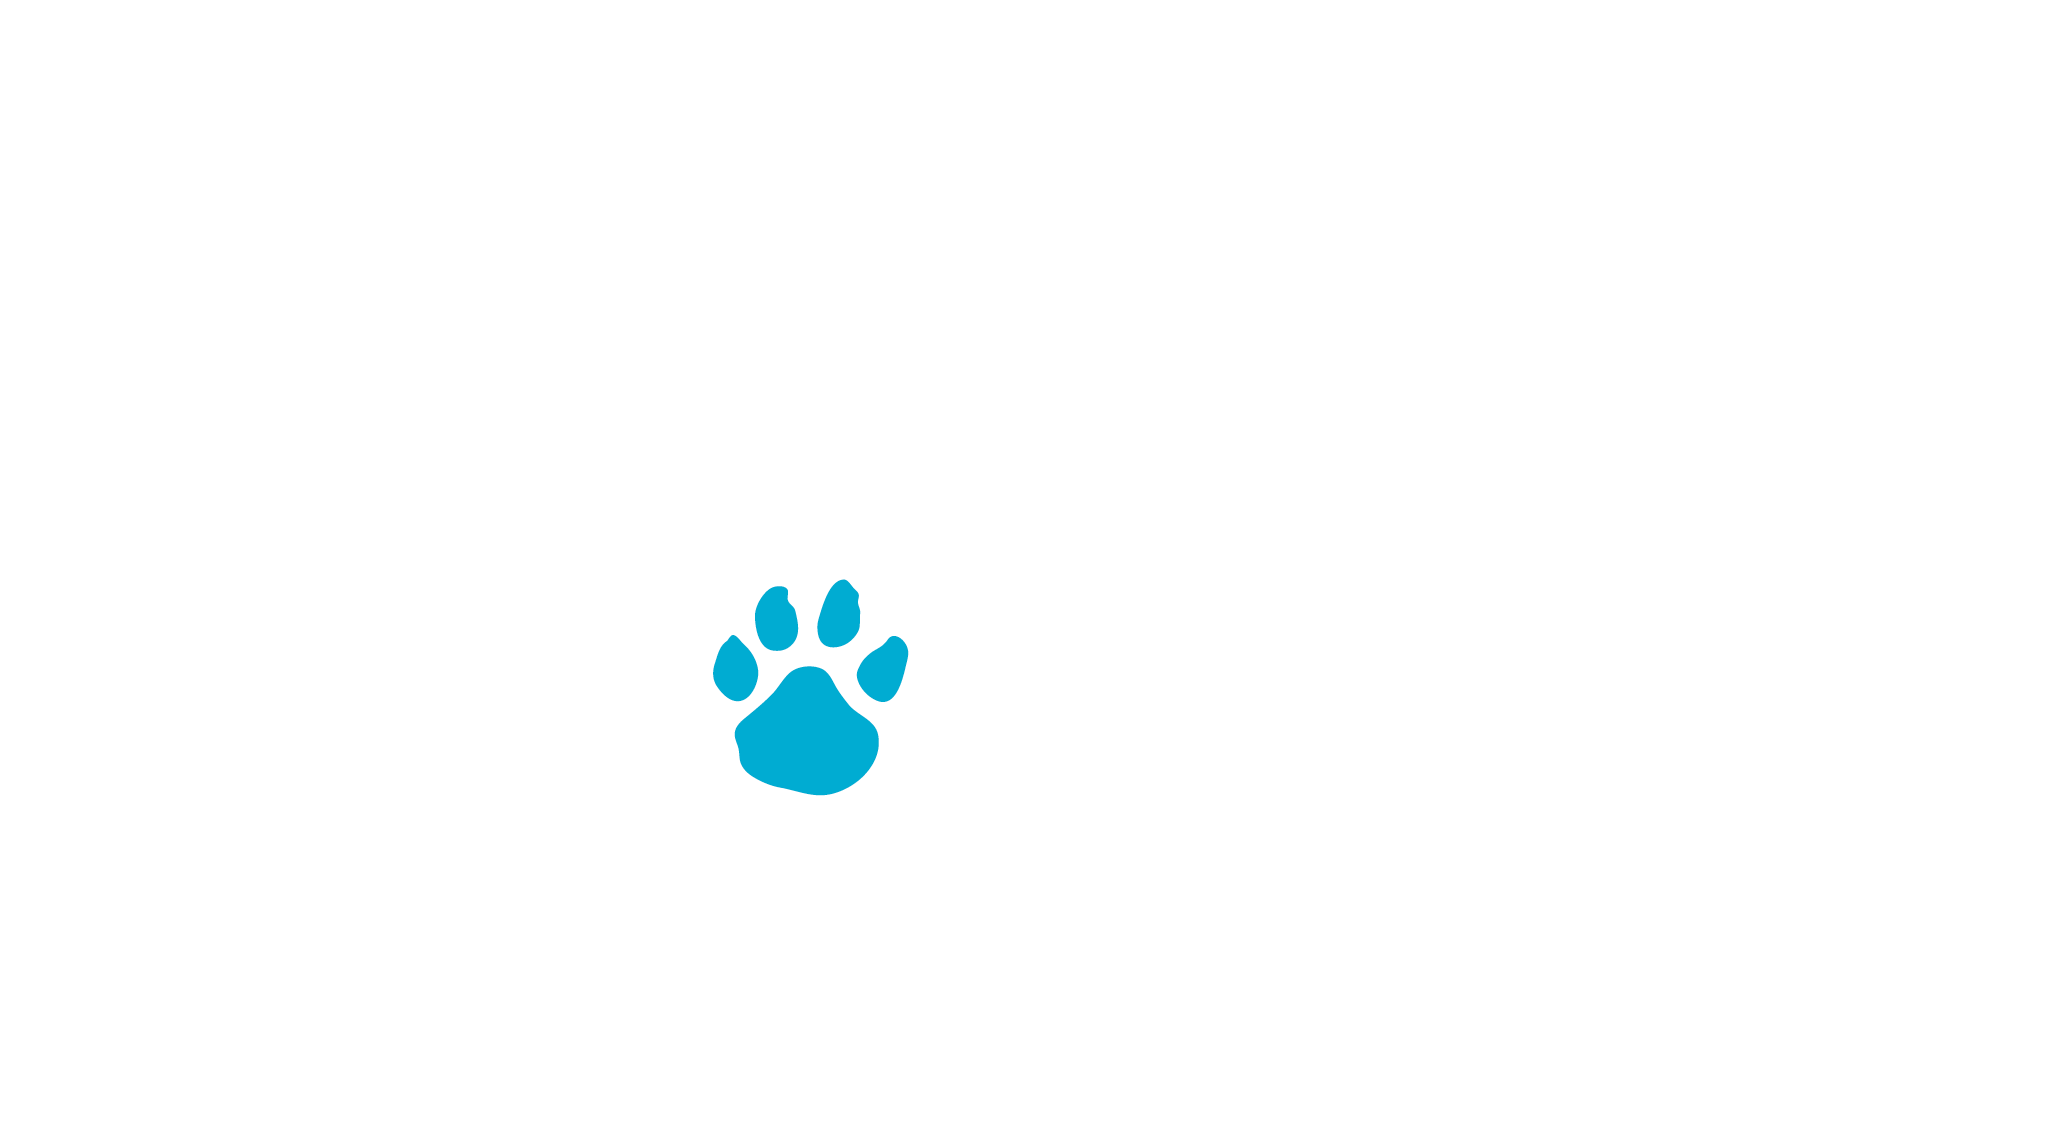 Pawz logo ORIGINAL reverse